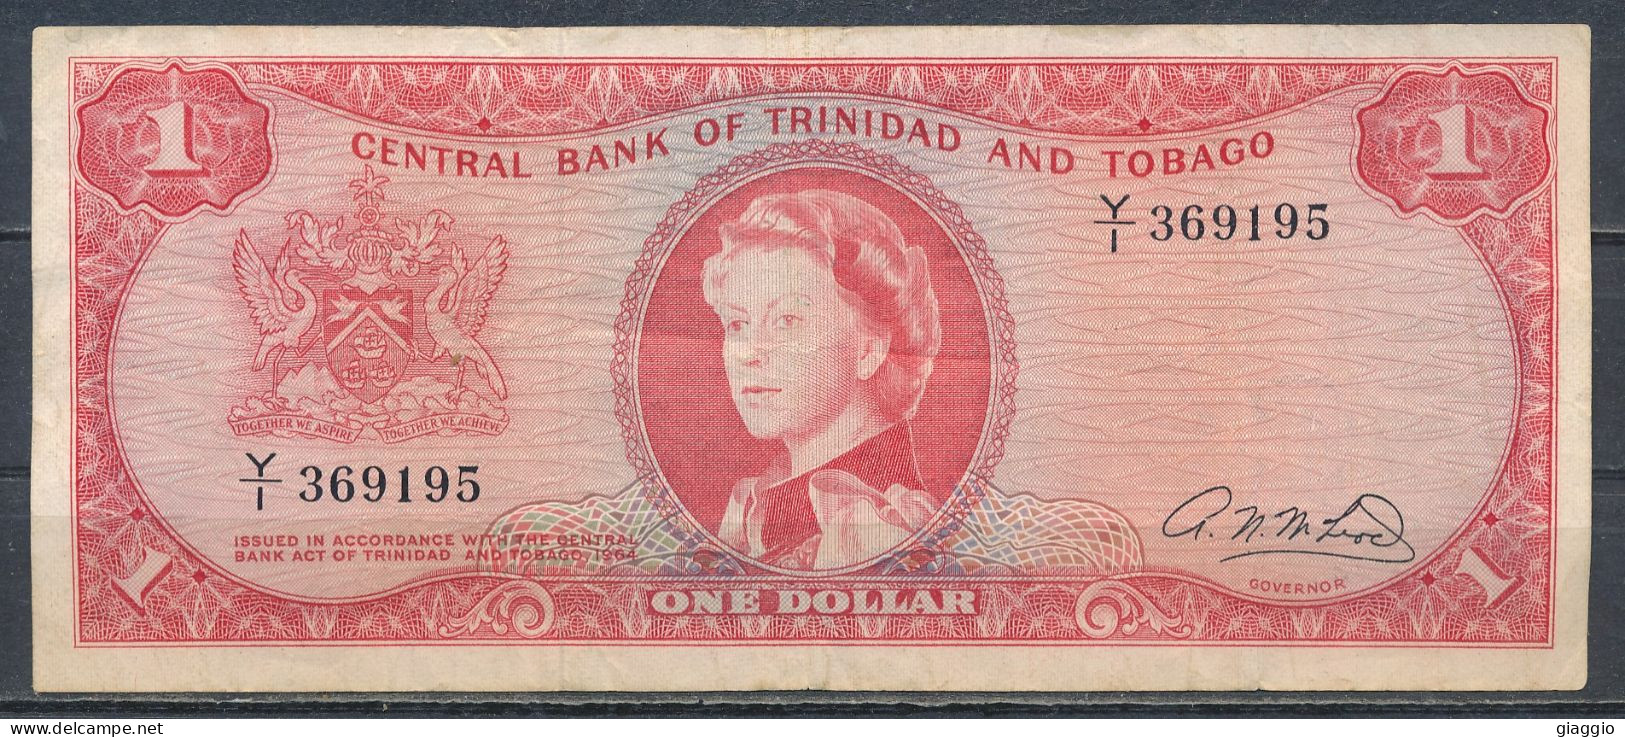 °°° TRINIDAD & TOBAGO 1 DOLLAR 1964 °°° - Trinidad & Tobago